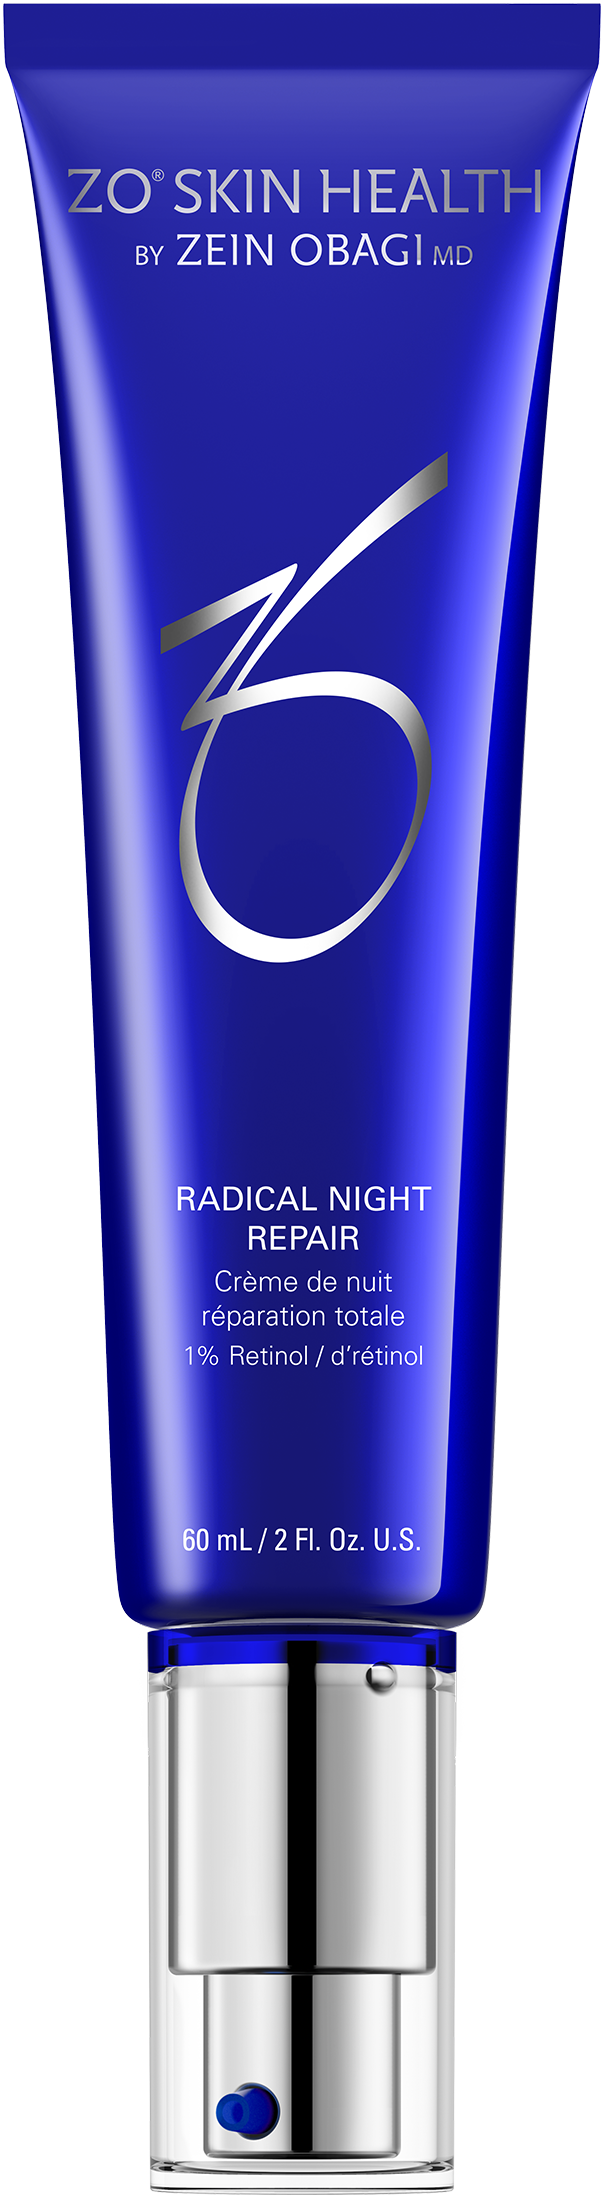 Radical Night Repair